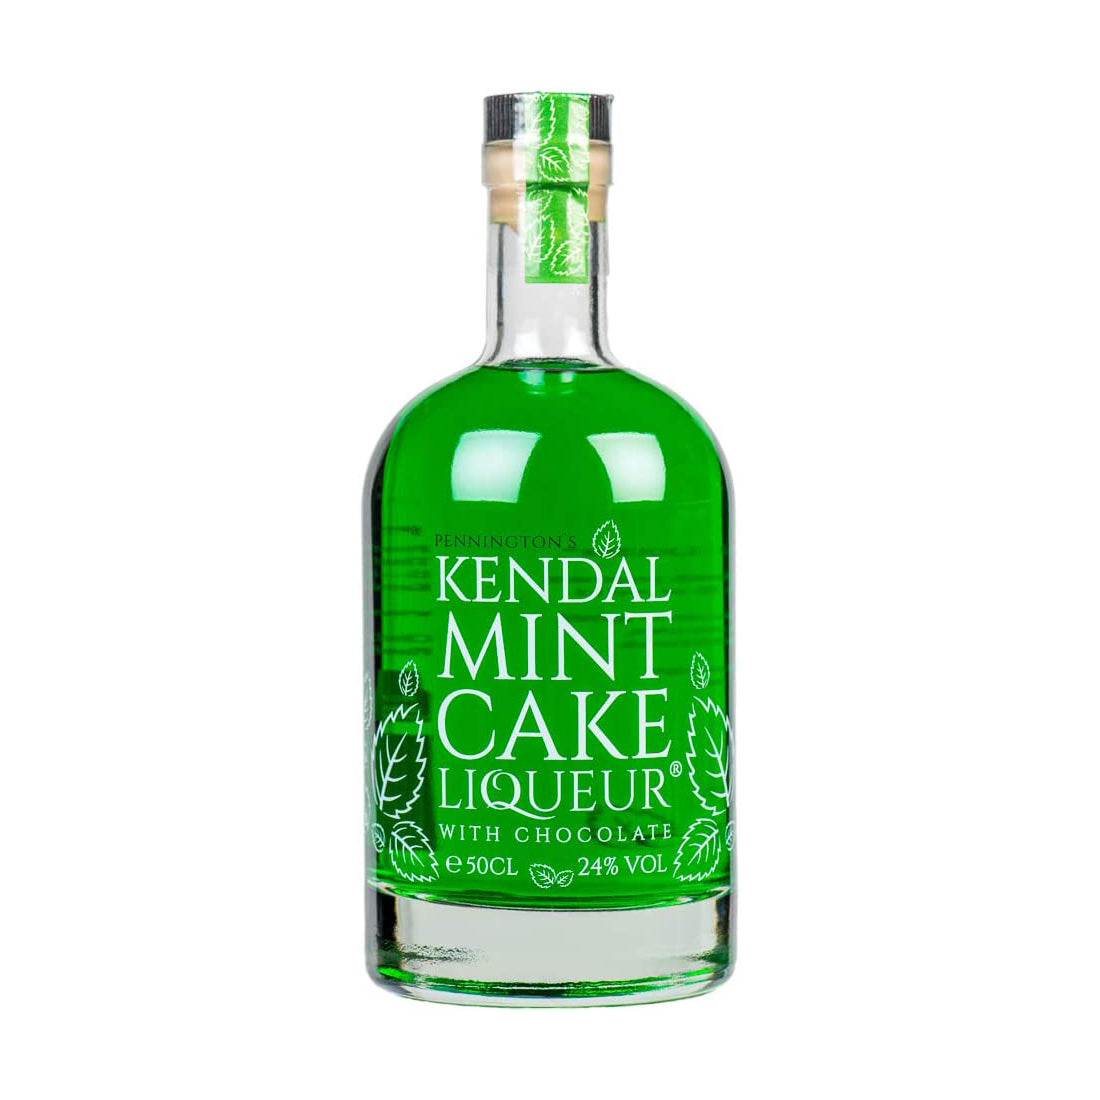 Pennington's Kendal Mint Cake Liqueur